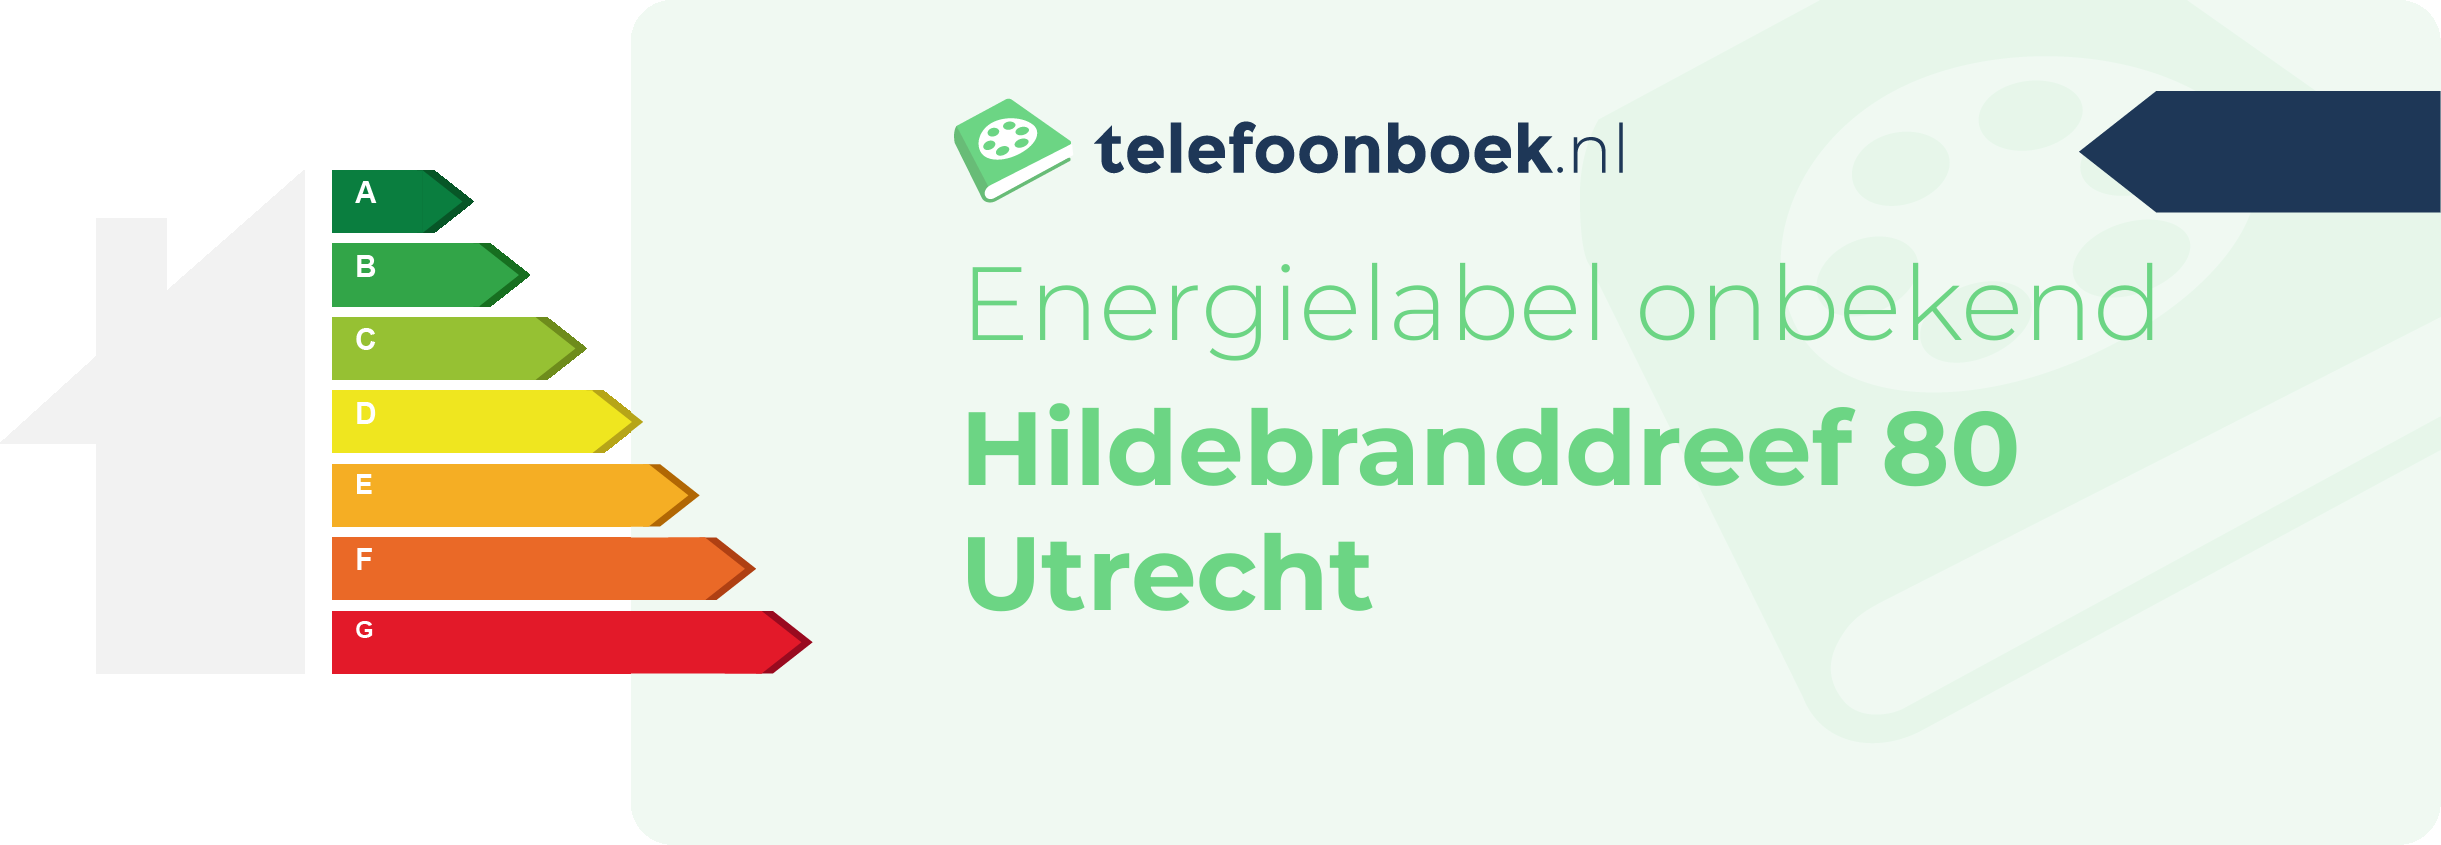 Energielabel Hildebranddreef 80 Utrecht